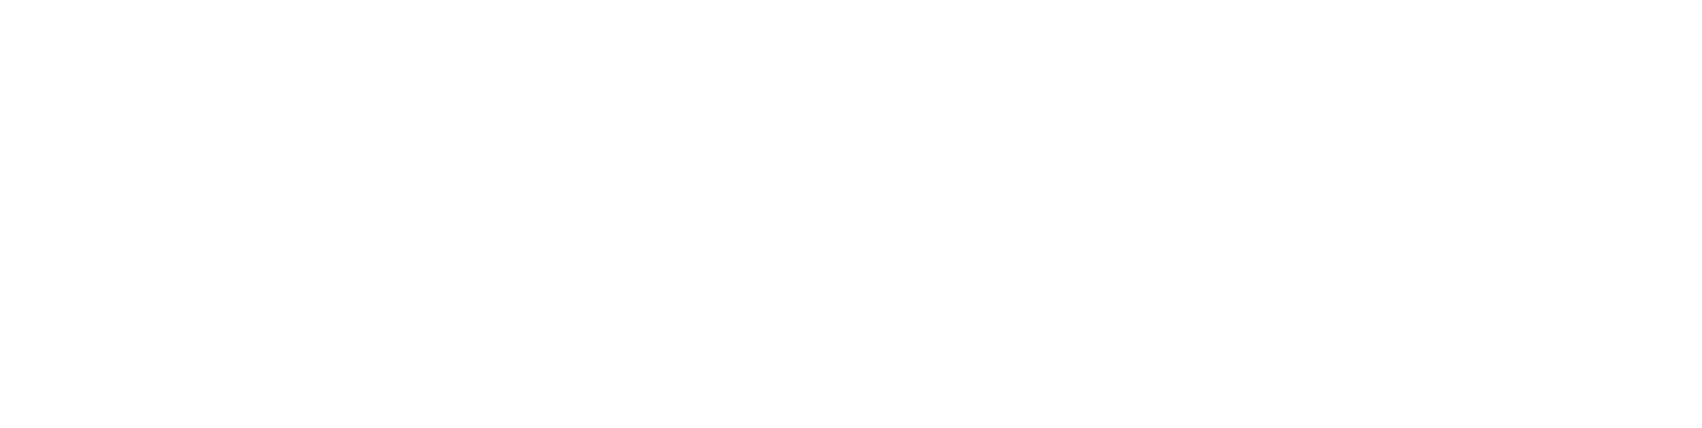 Stryker Corporation logo large for dark backgrounds (transparent PNG)